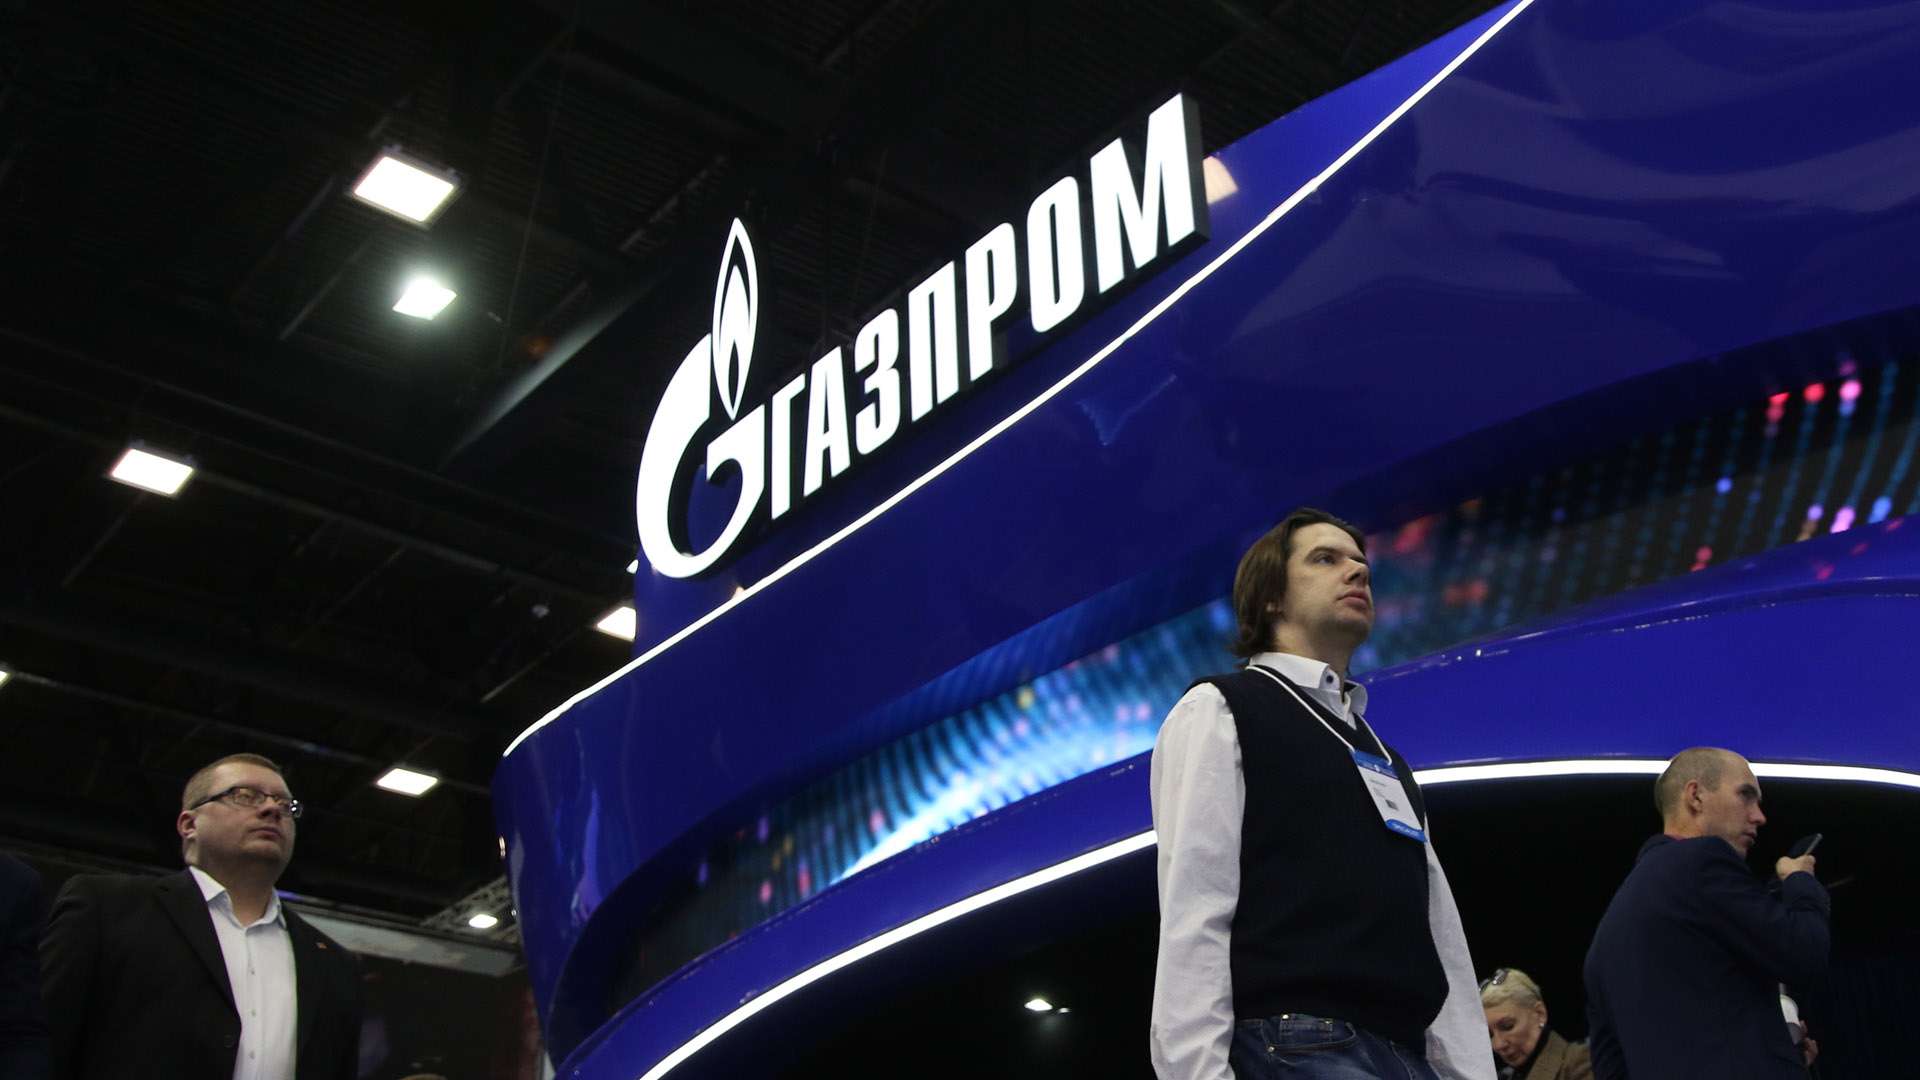 Стоимость газпрома 2023. Совет директоров Газпрома 2023. Совет директоров Газпрома 2023 фото. Юбилей Газпрома в 2023.